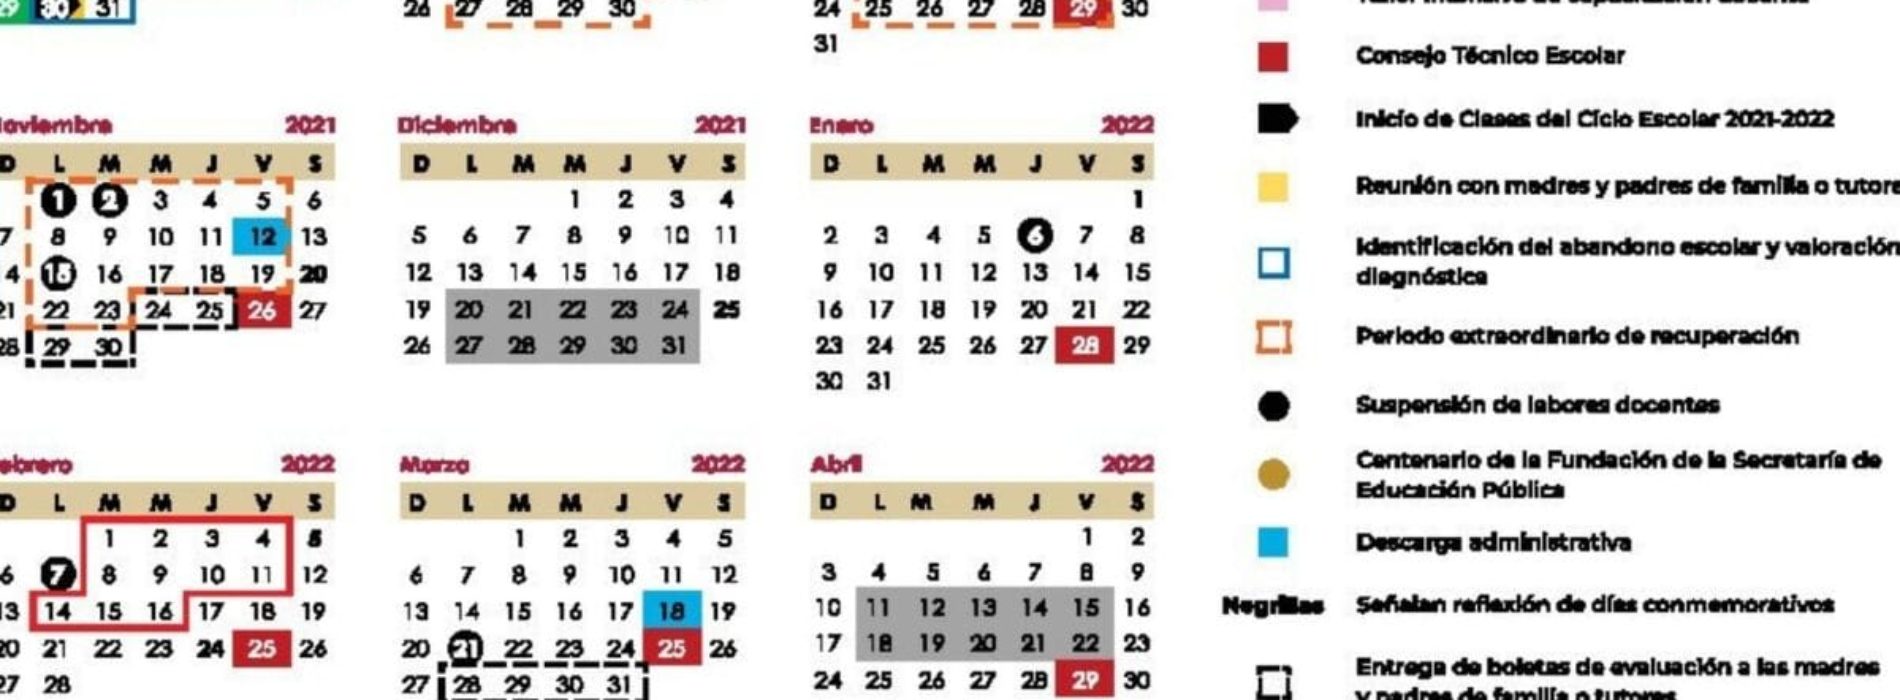 Conoce los días festivos oficiales o de descanso obligatorios de ley en el segundo mes de 2022.